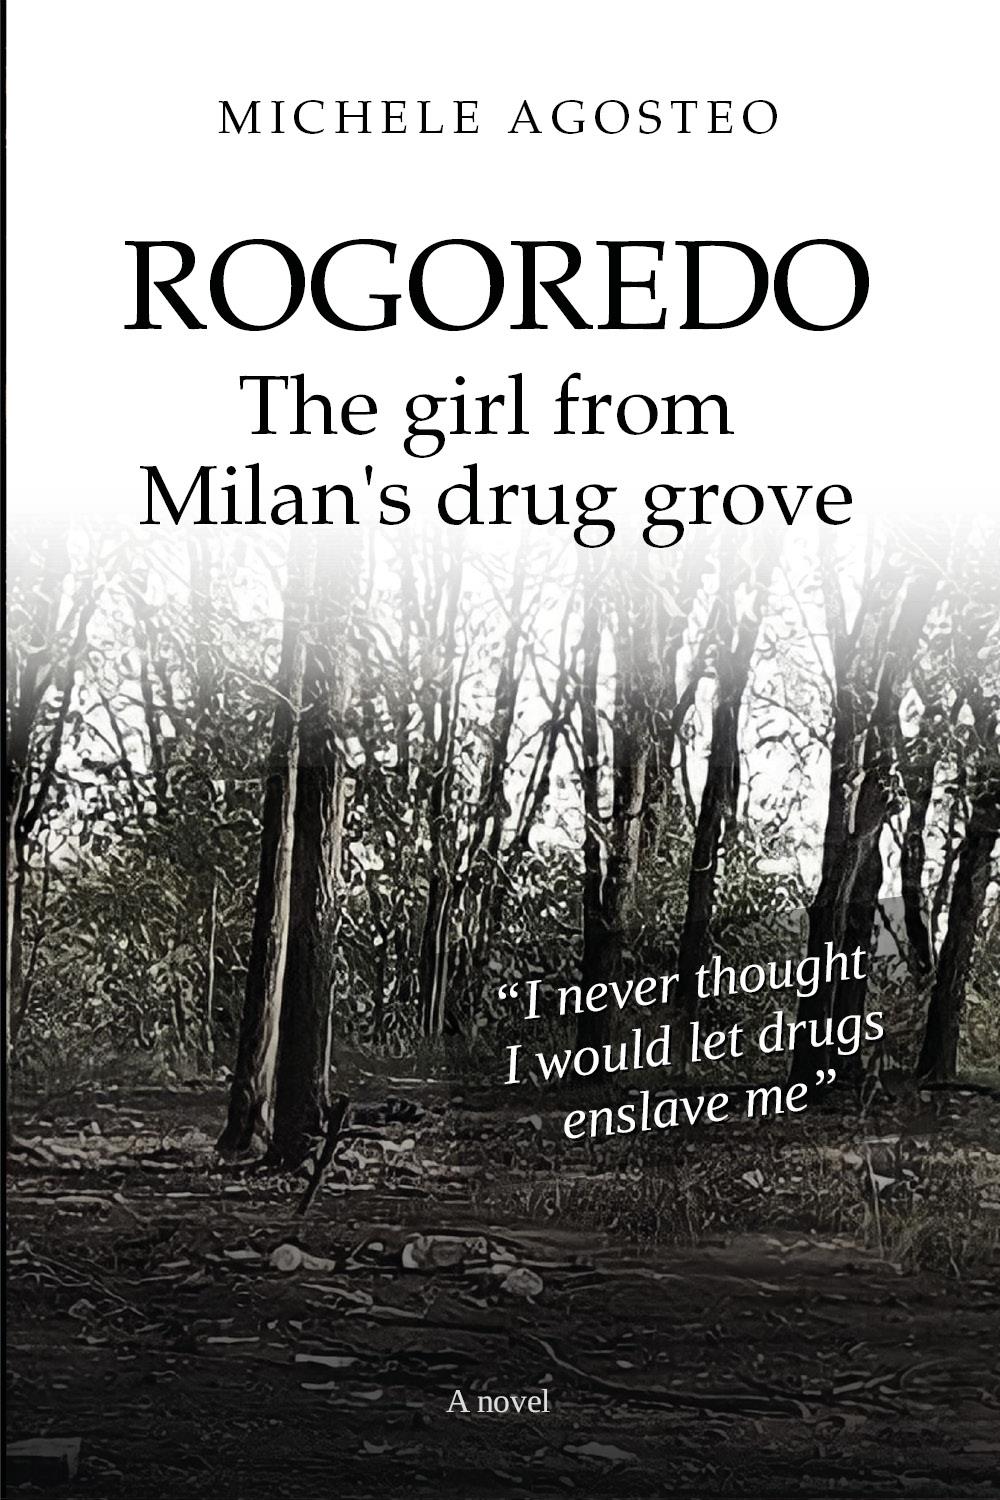 Rogoredo, the girl from Milan's drug grove